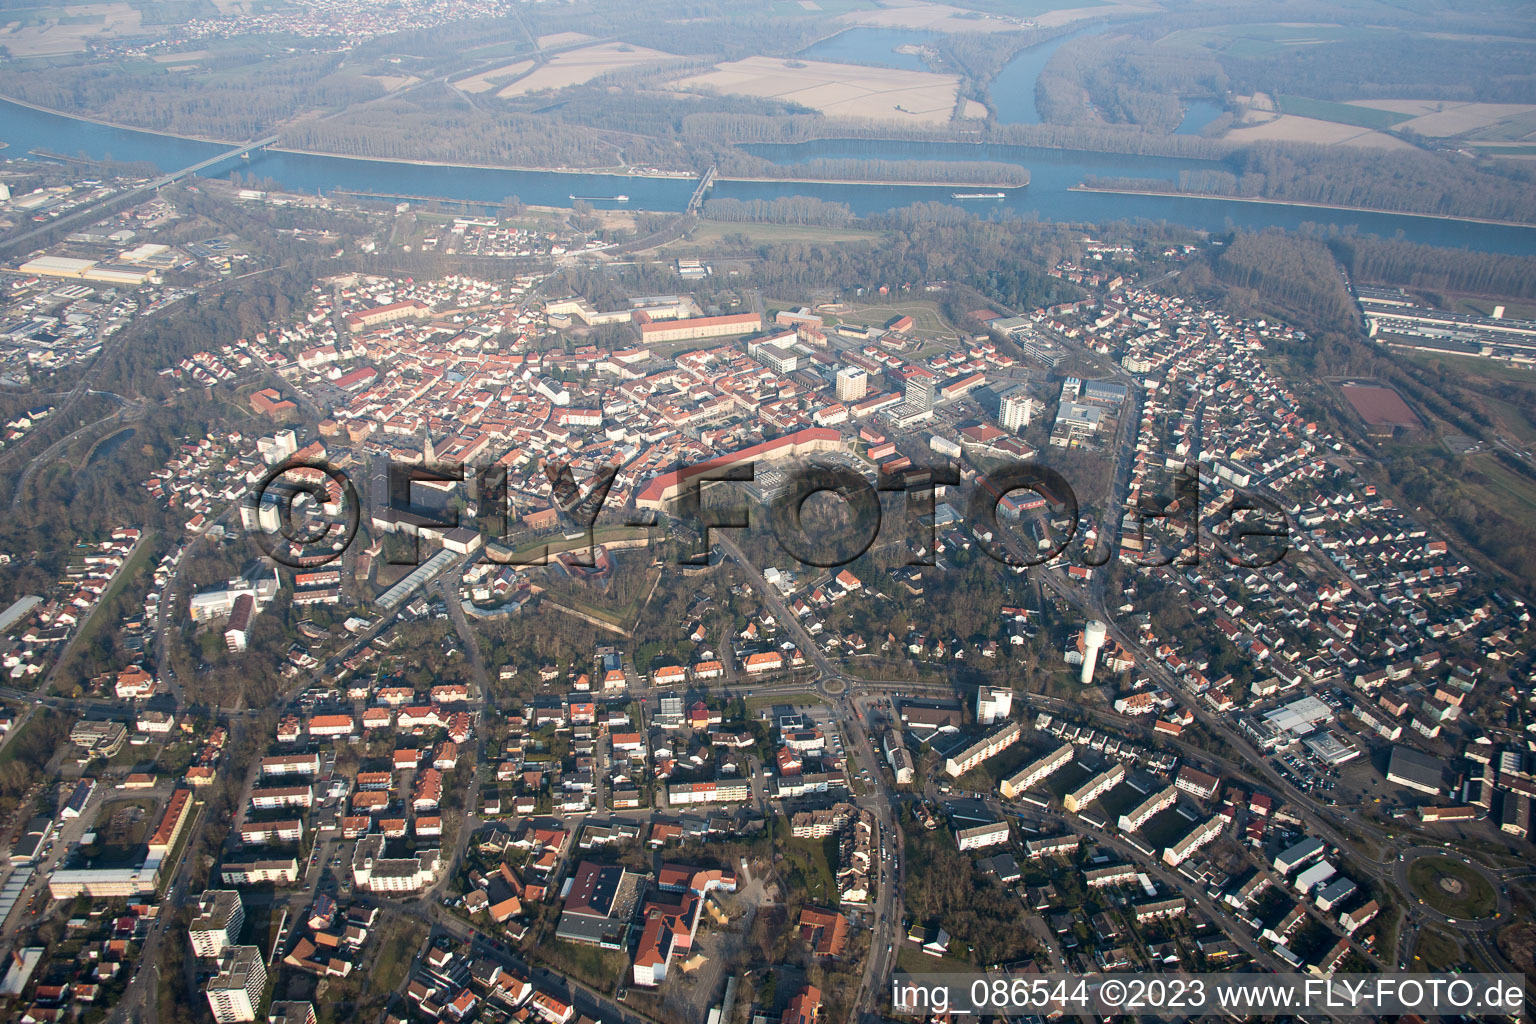 Germersheim im Bundesland Rheinland-Pfalz, Deutschland vom Flugzeug aus